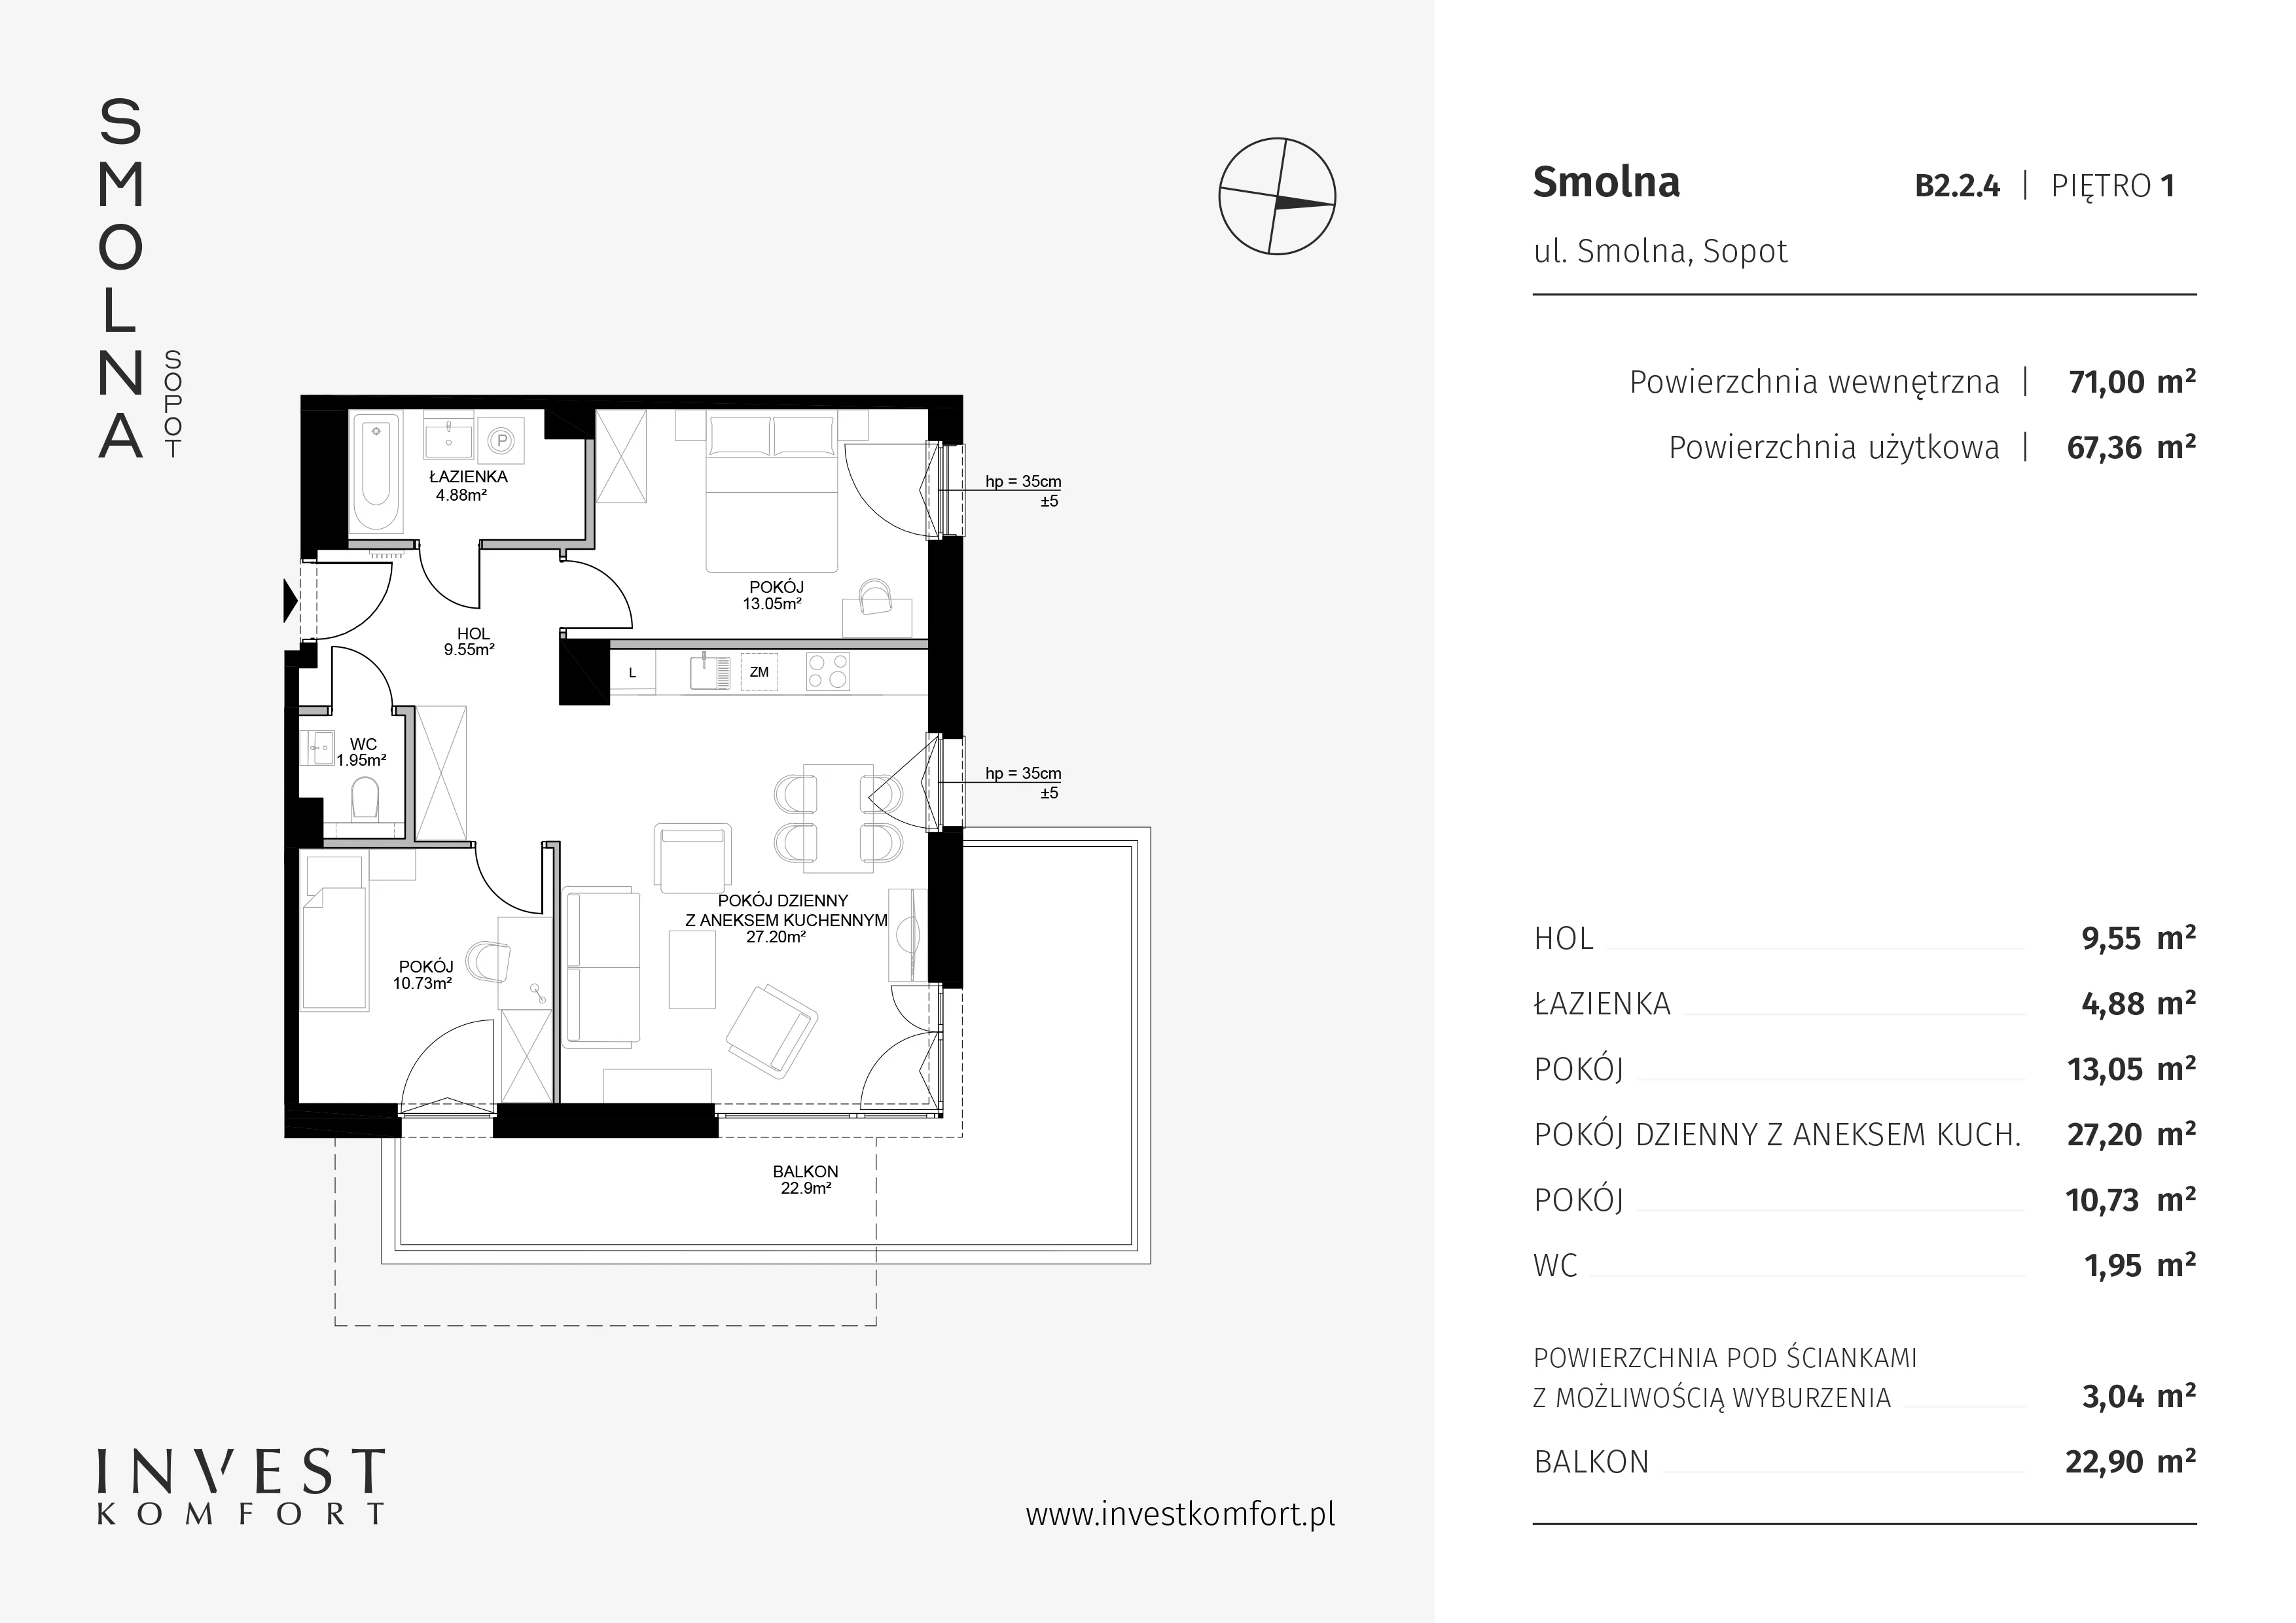 Mieszkanie 71,00 m², piętro 1, oferta nr B2.2.4, Smolna, Sopot, Świemirowo, ul. Smolna